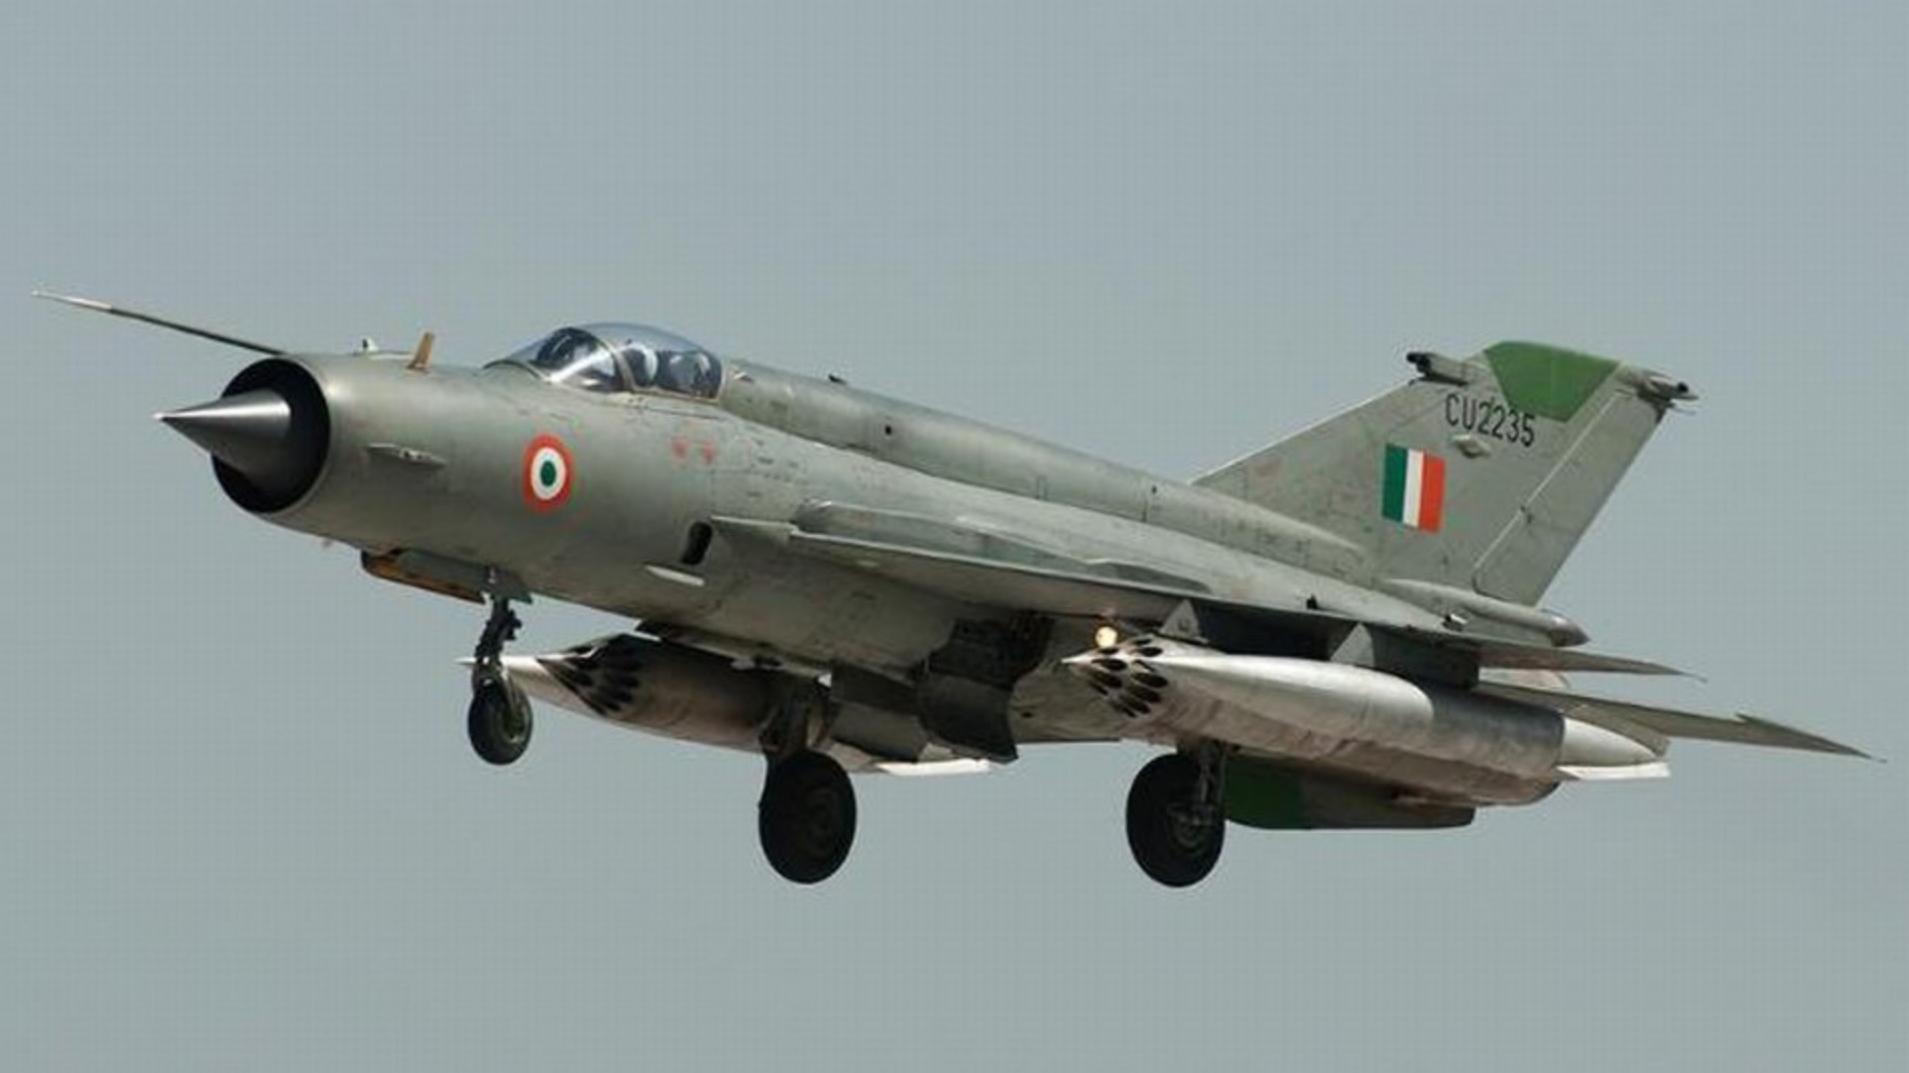 Πόσα ινδικά MiG-21 συνετρίβησαν λόγω ατυχημάτων; – Θα μείνετε άφωνοι